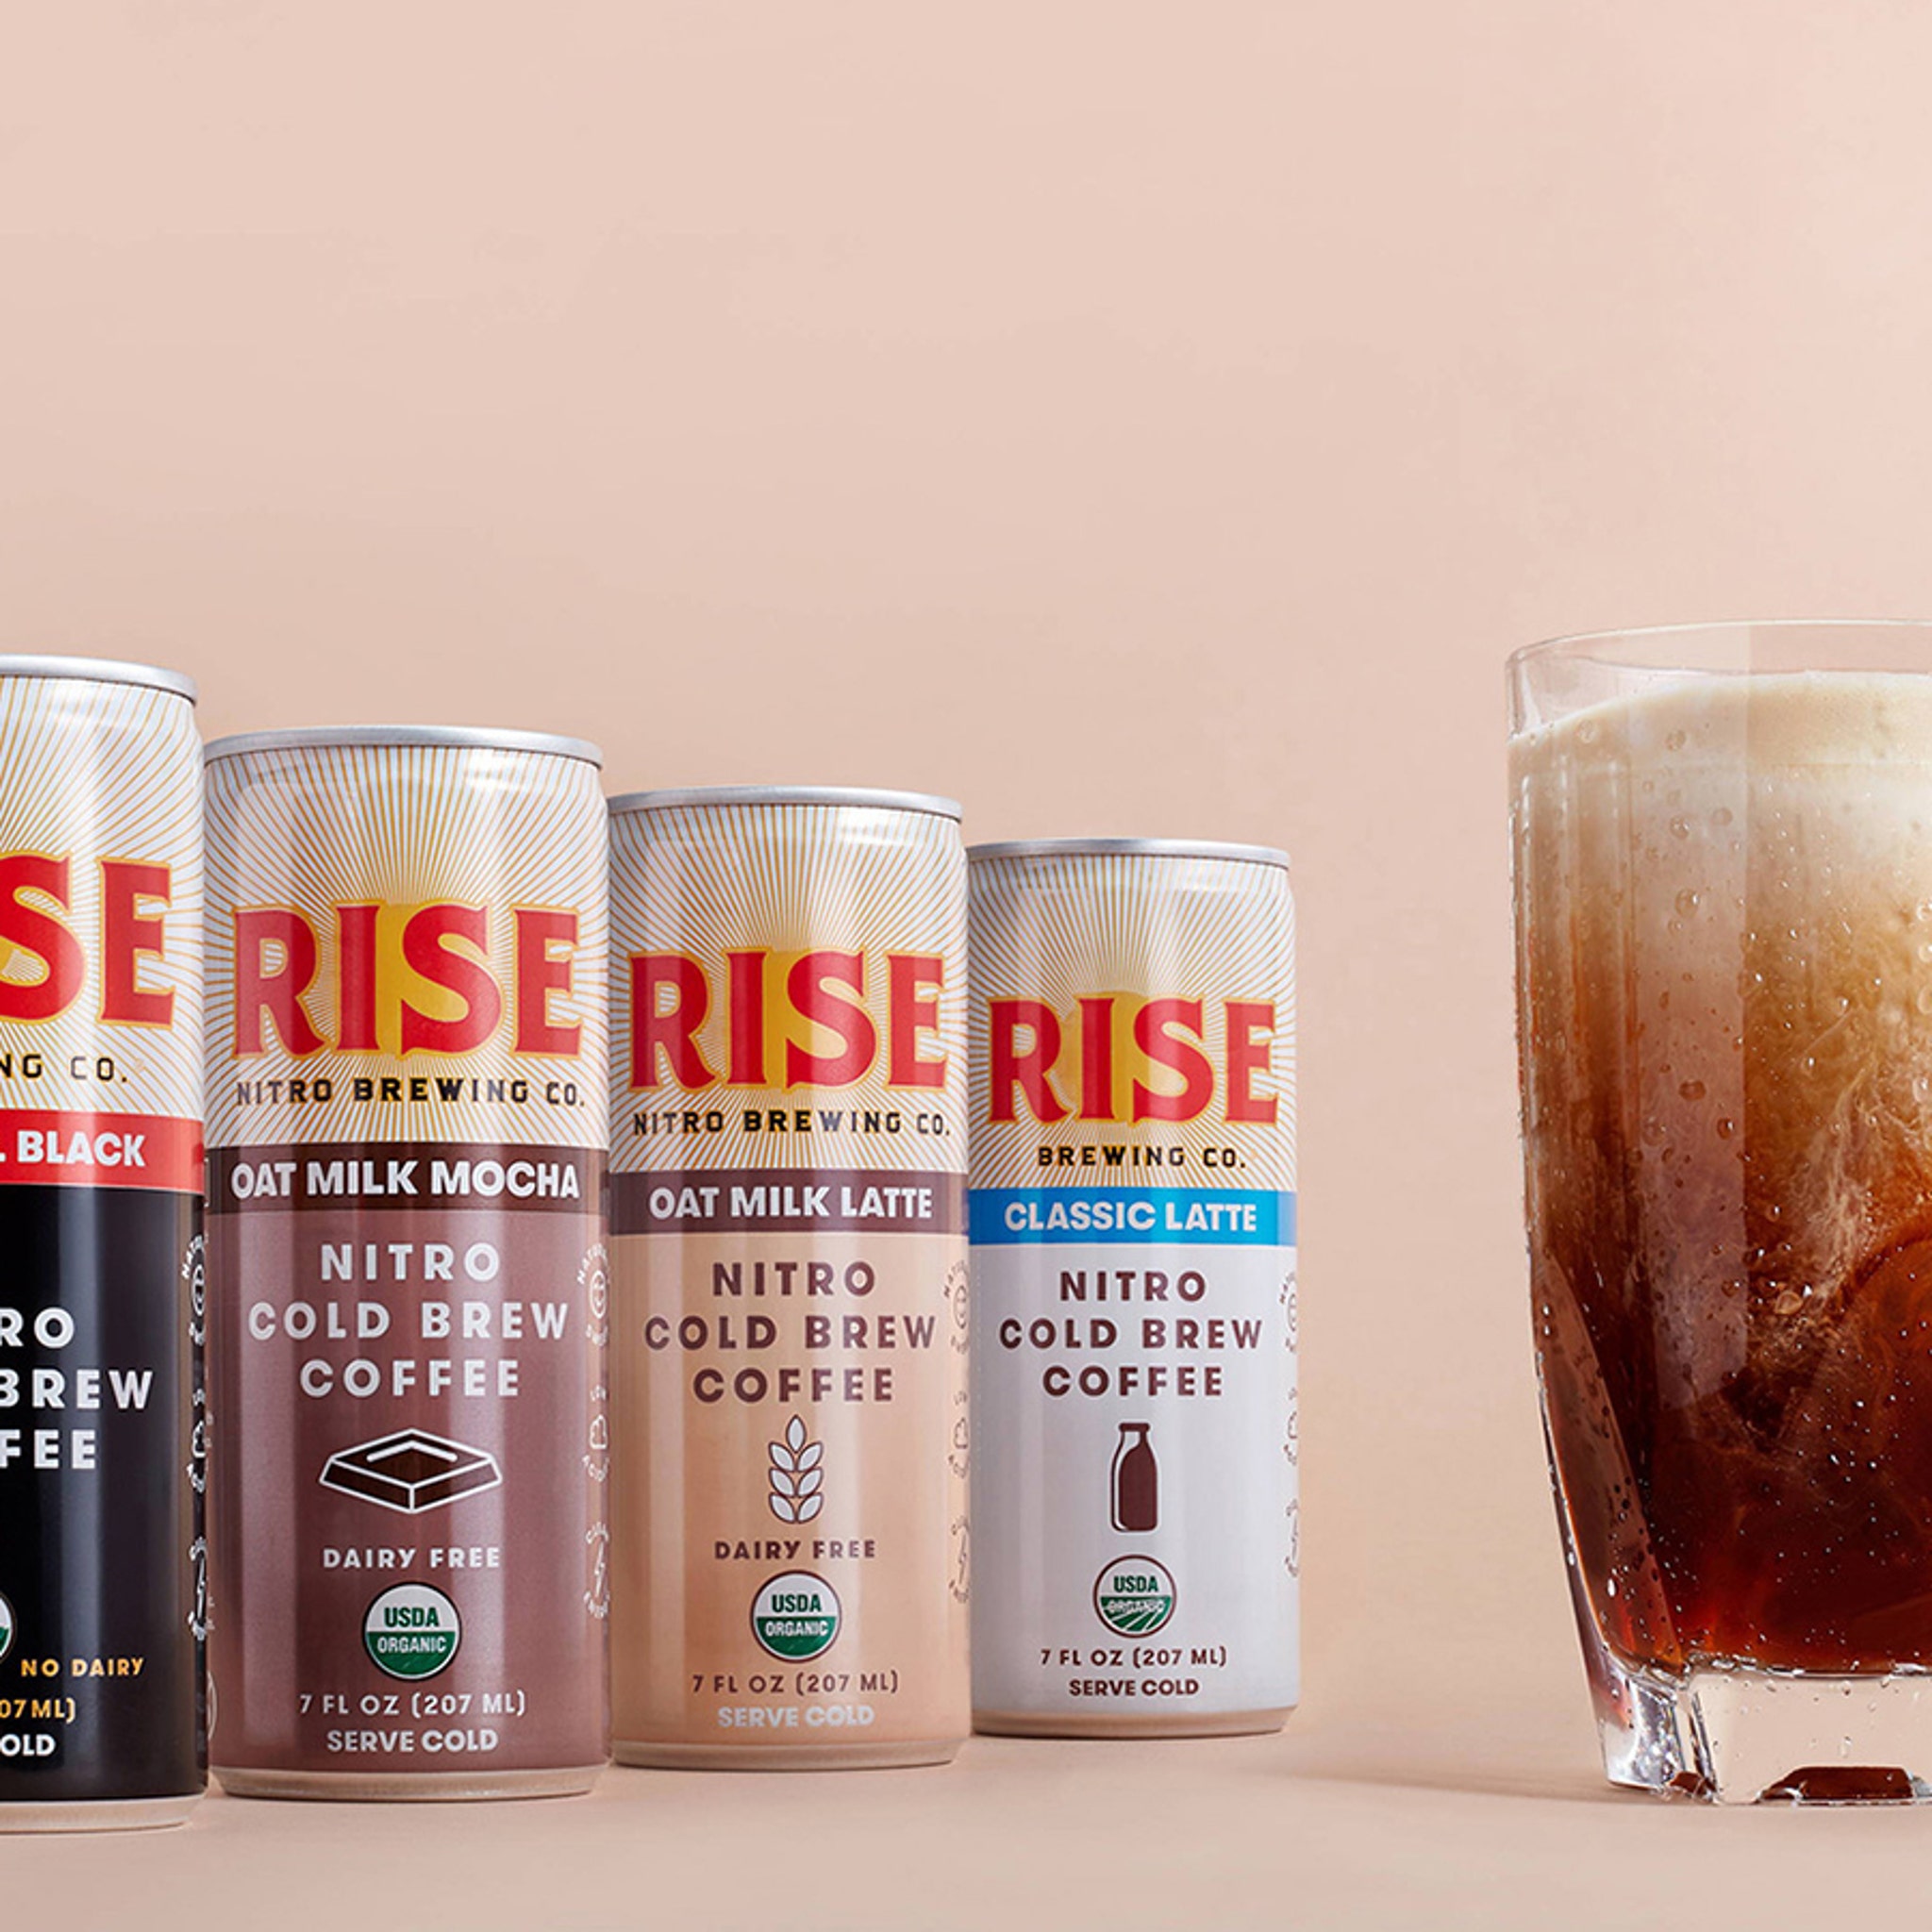 RISE Brewing Co. Original Black Nitro Cold Brew Coffee - 7 oz Can